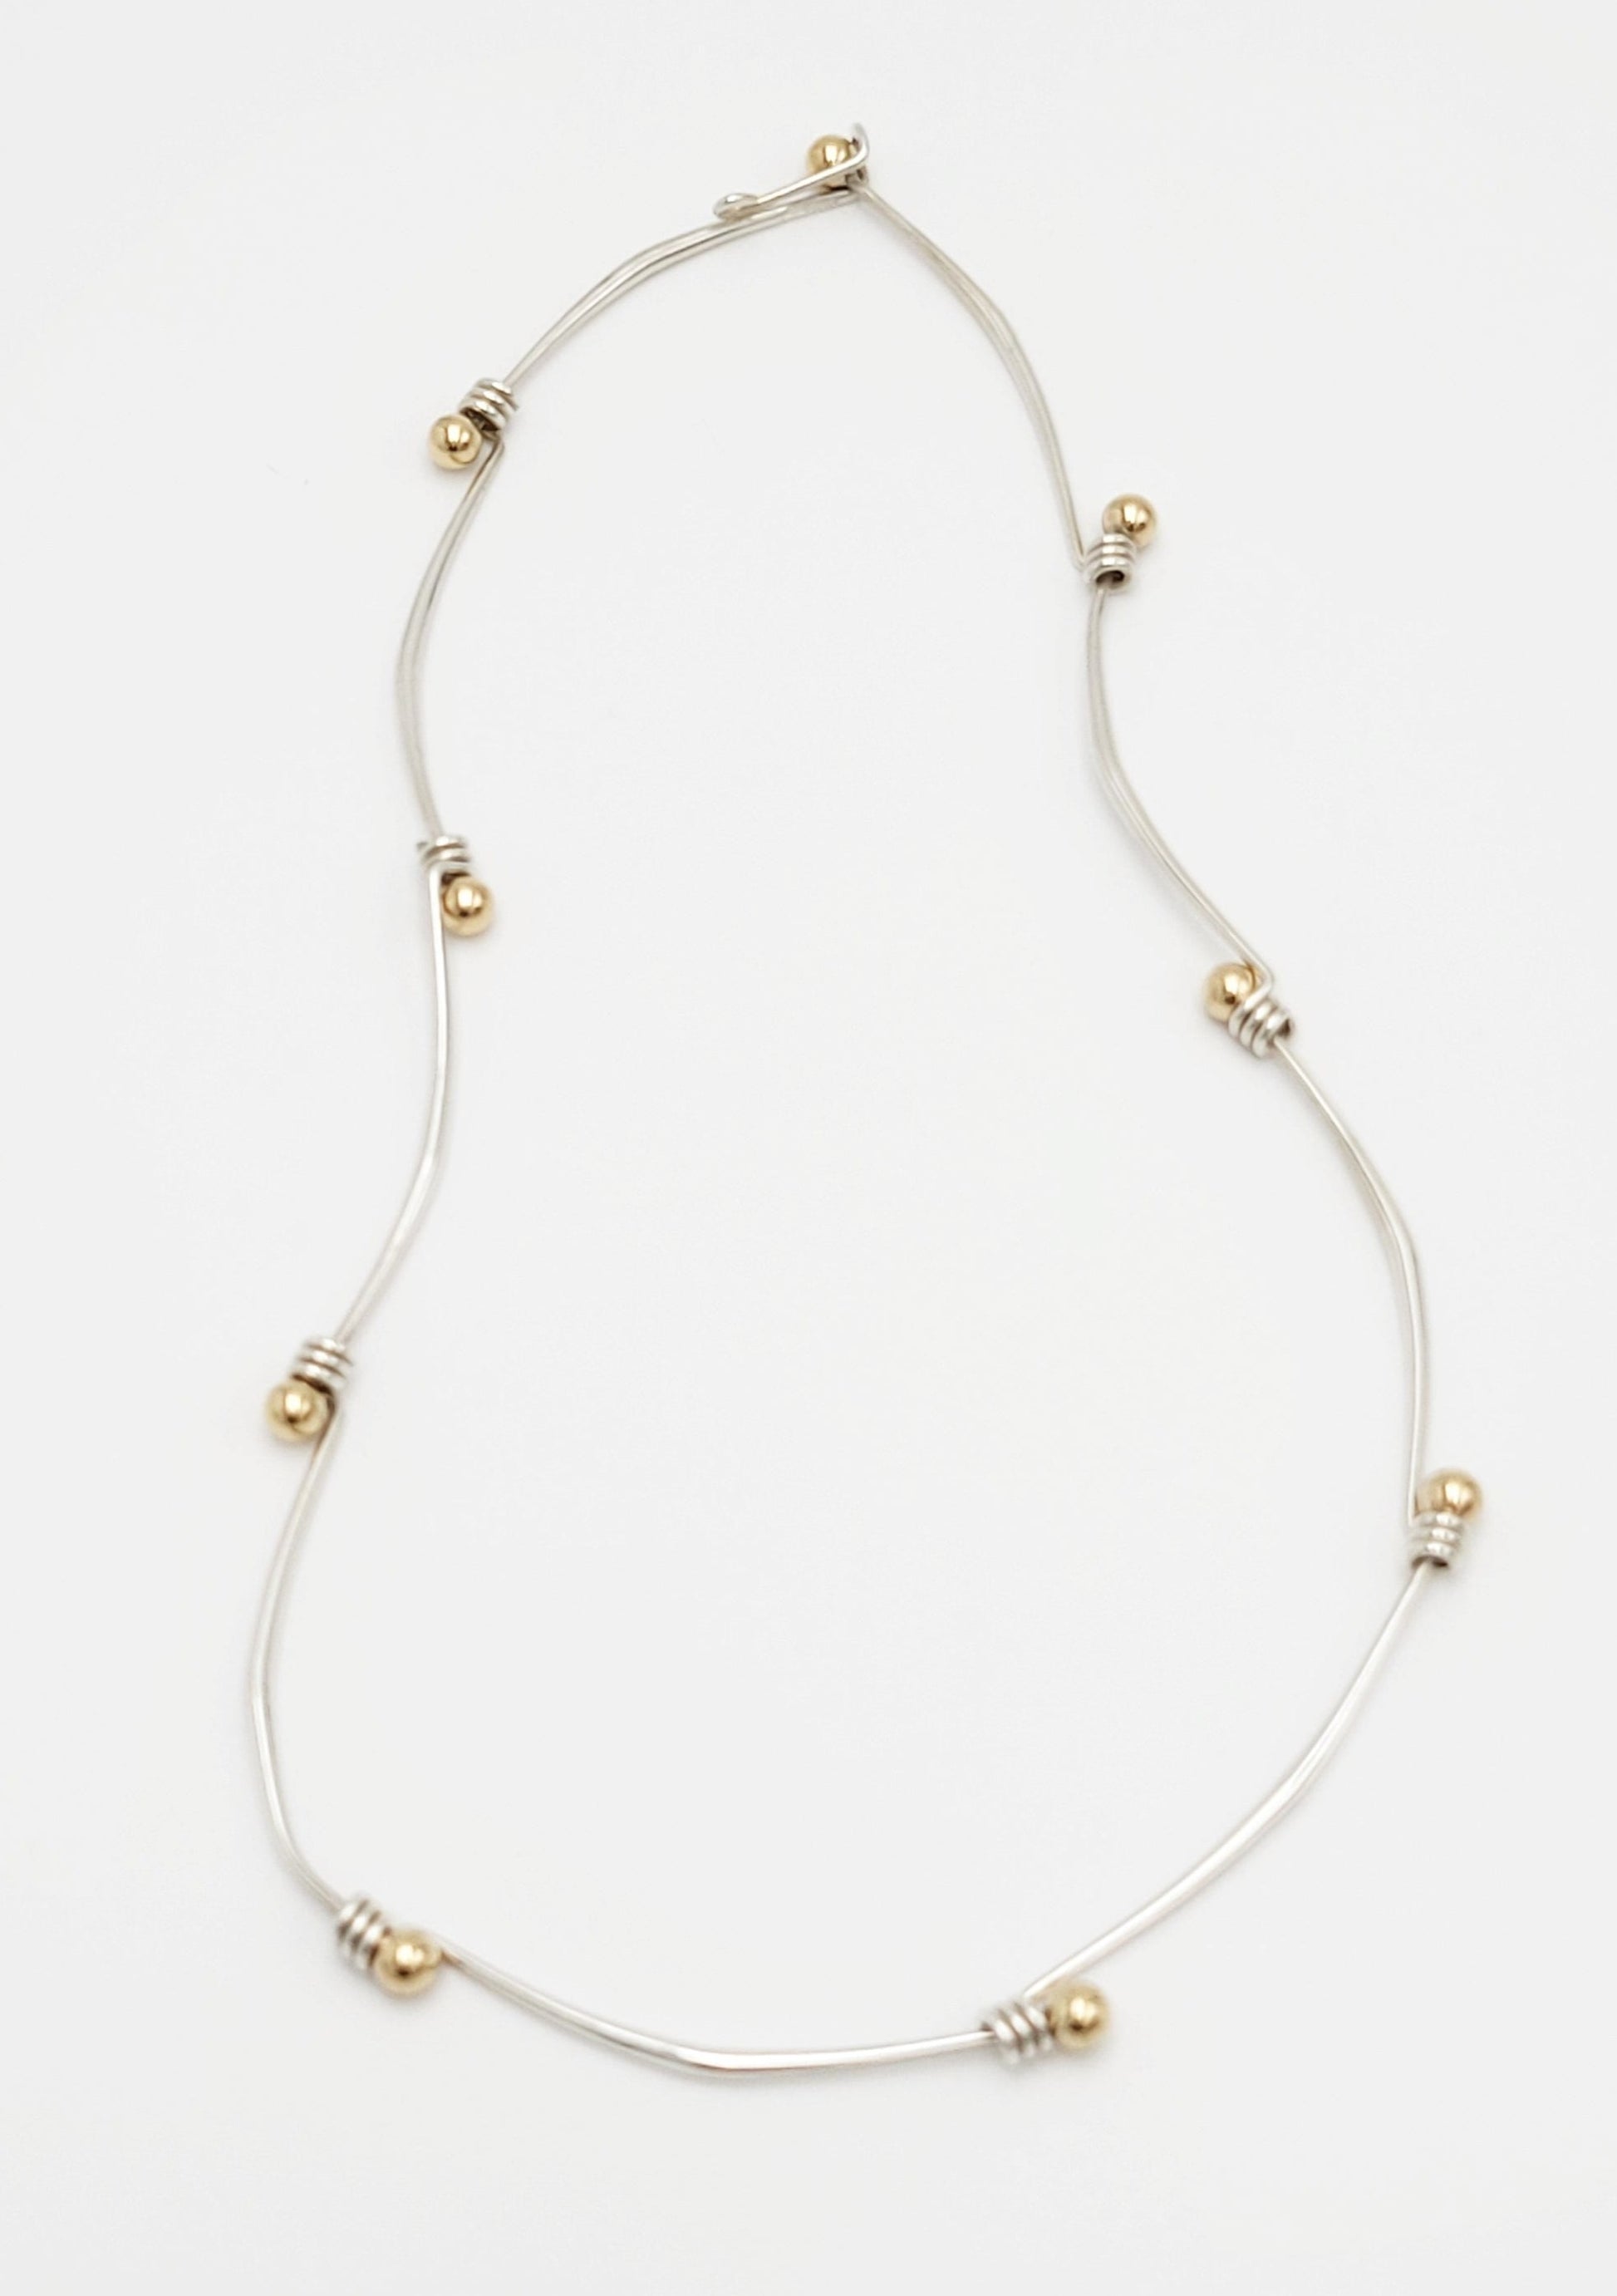 Ed Levin Jewelry Designer Ed Levin Modernist Sterling 14K Gold Slide Necklace Rare 1960/70s